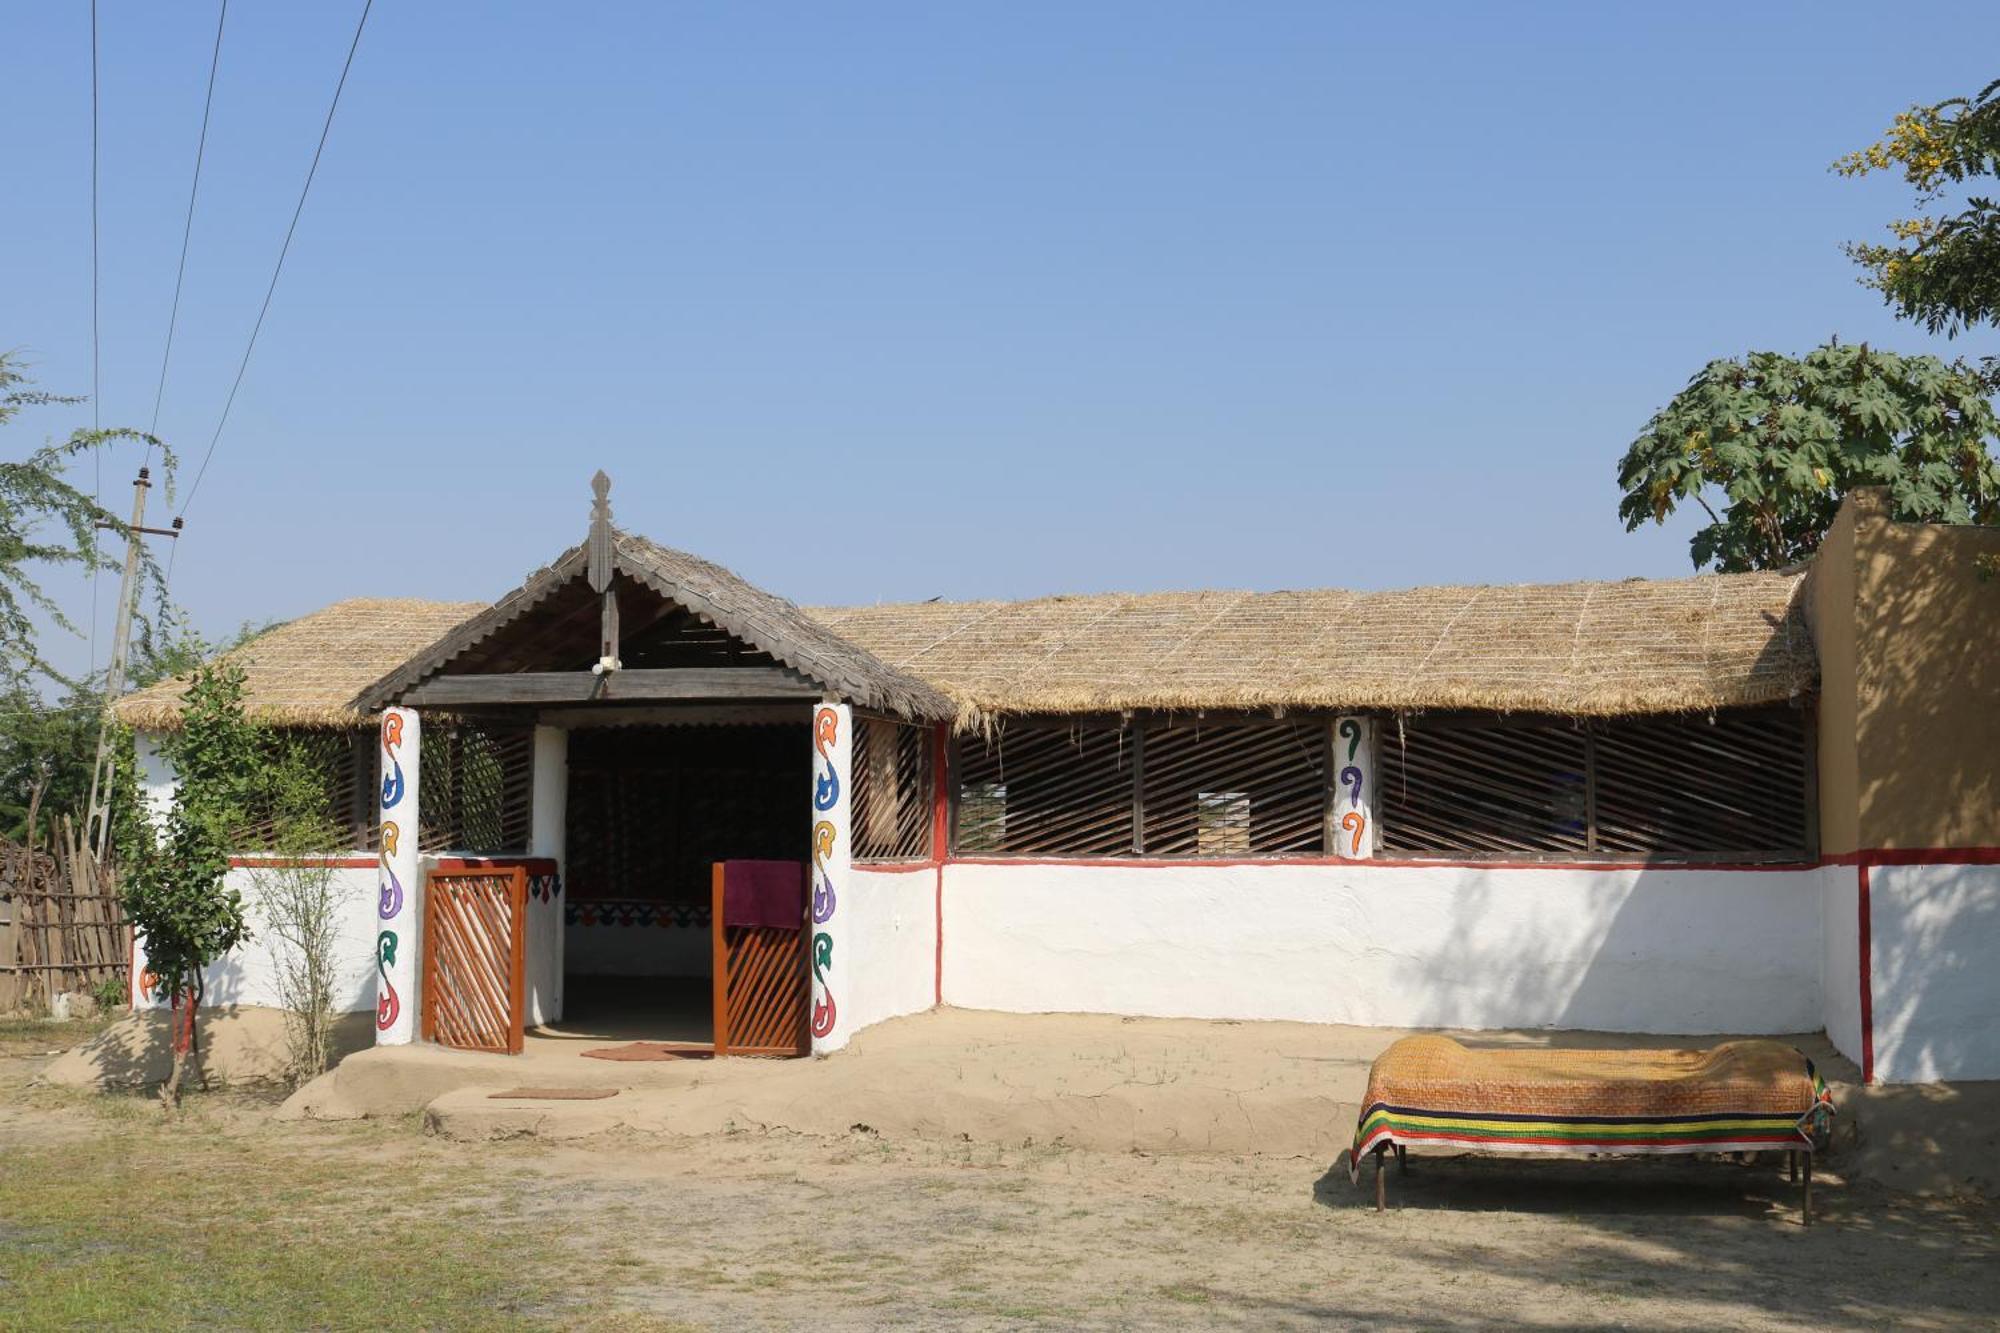 Banni Village Stay Bherandiāla 外观 照片